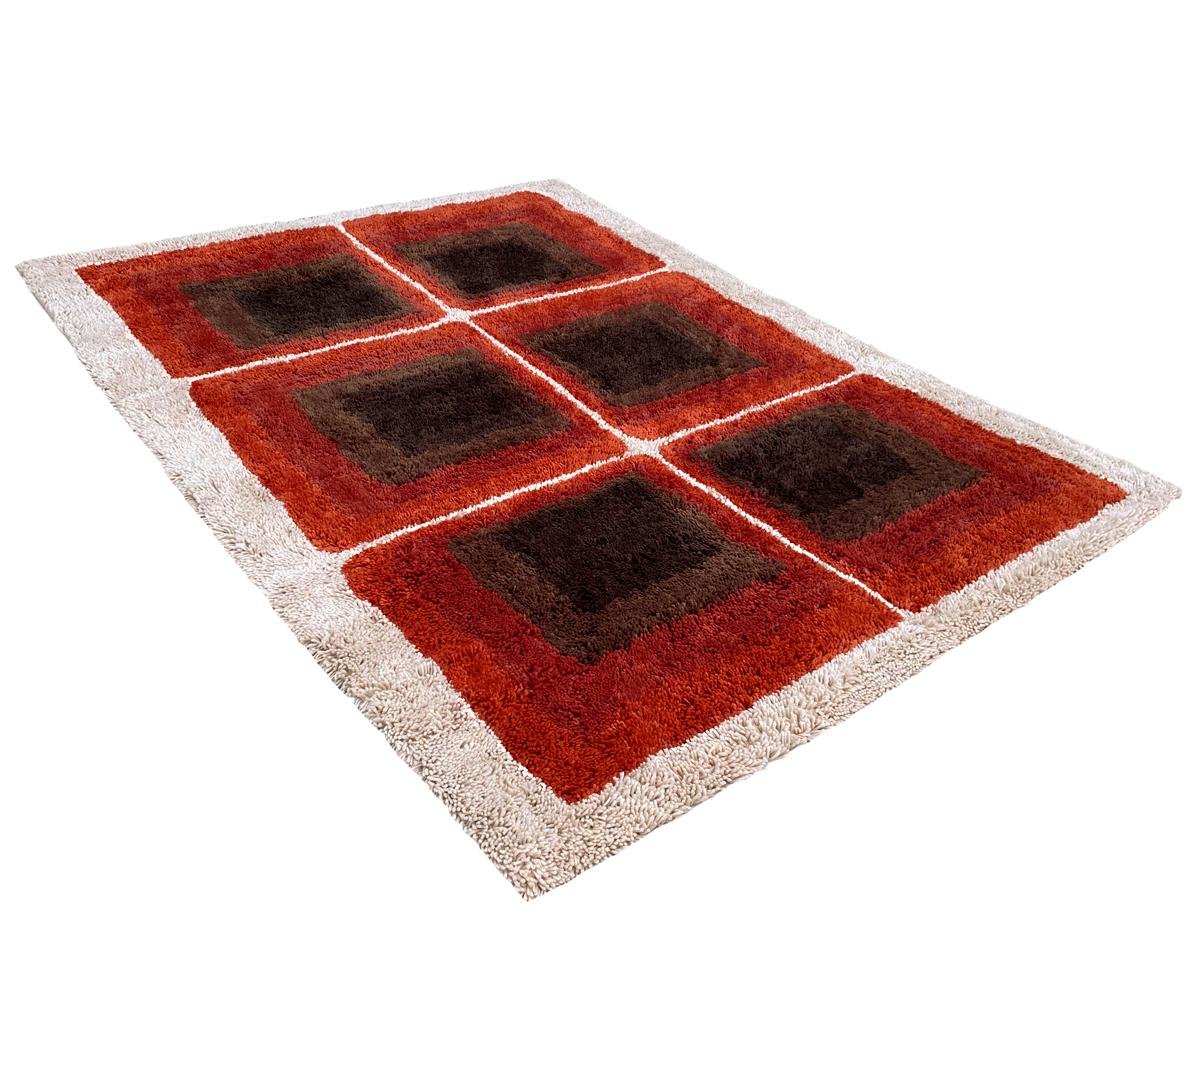 Wir sind stolz darauf, diese brandneuen, fein gearbeiteten, qualitativ hochwertigen Designer-Teppiche anbieten zu können. Diese sind wirklich von den klassischen skandinavischen Teppichdesigns der 1950er und 1960er Jahre inspiriert. Das gesamte